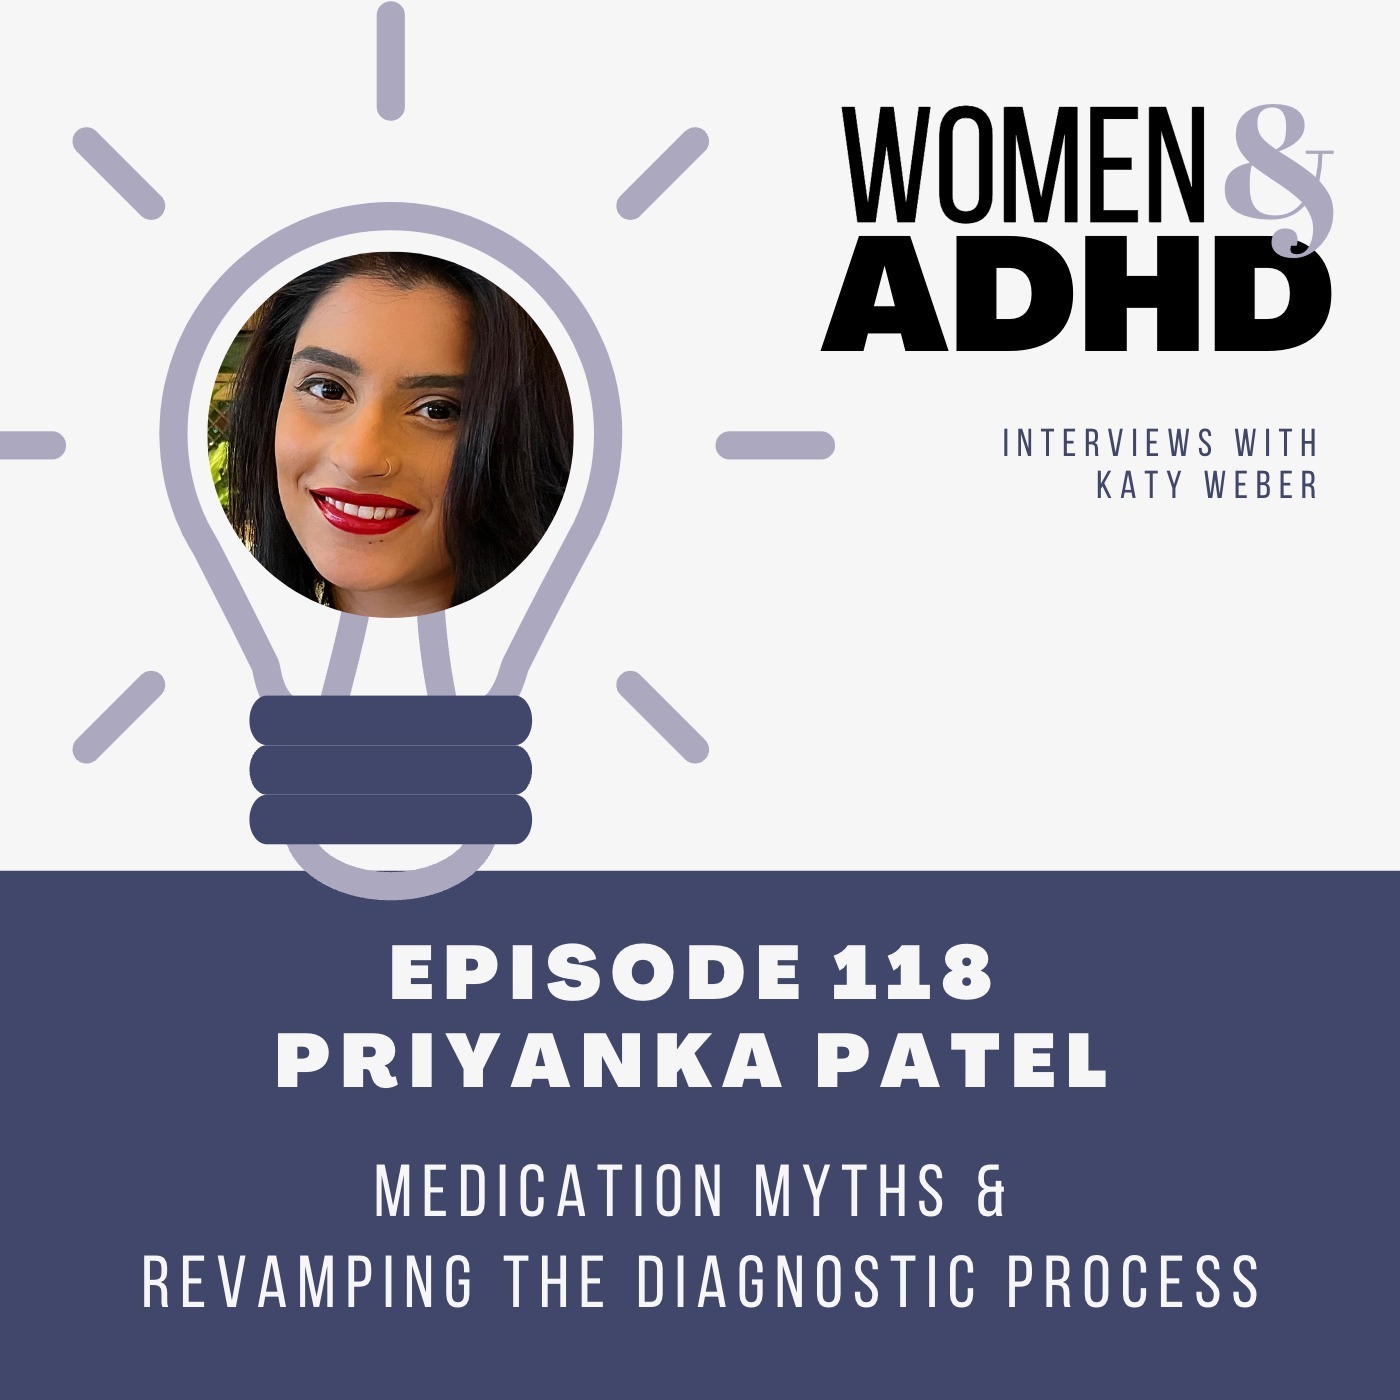 Priyanka Patel: Medication myths & revamping the diagnostic process